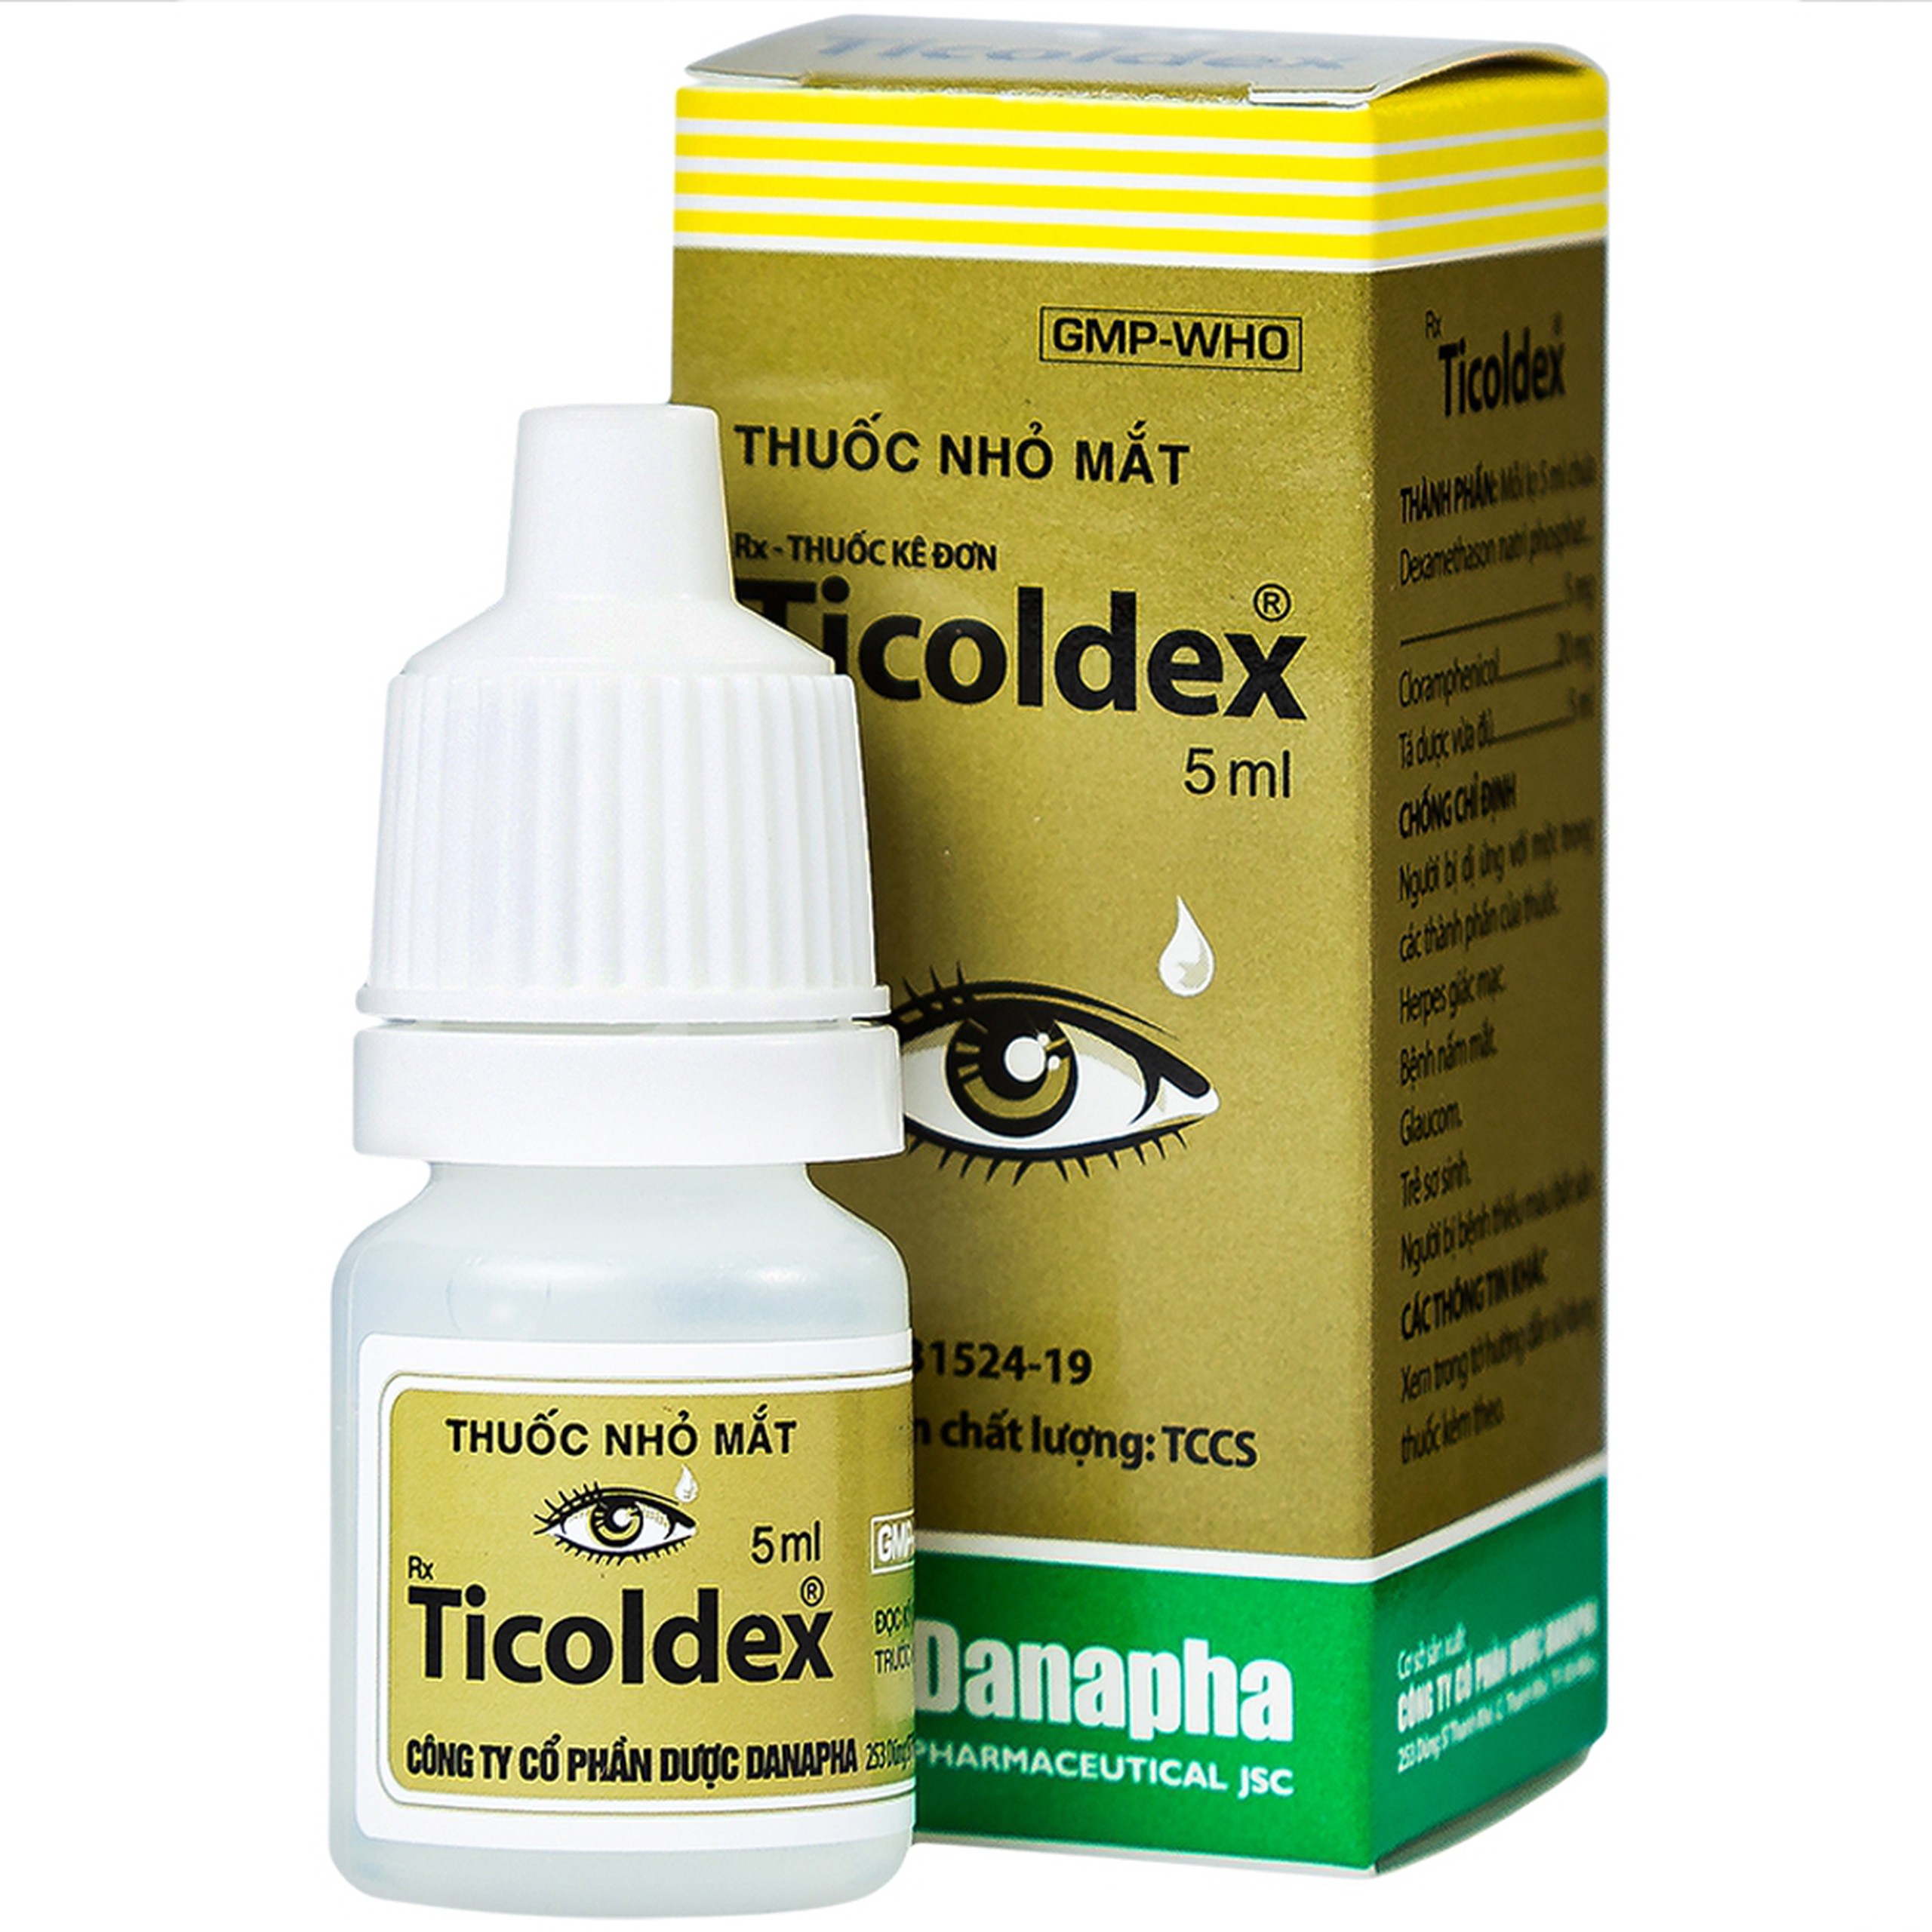 Thuốc nhỏ mắt Ticoldex Danapha điều trị viêm giác mạc, viêm kết mạc (5ml)